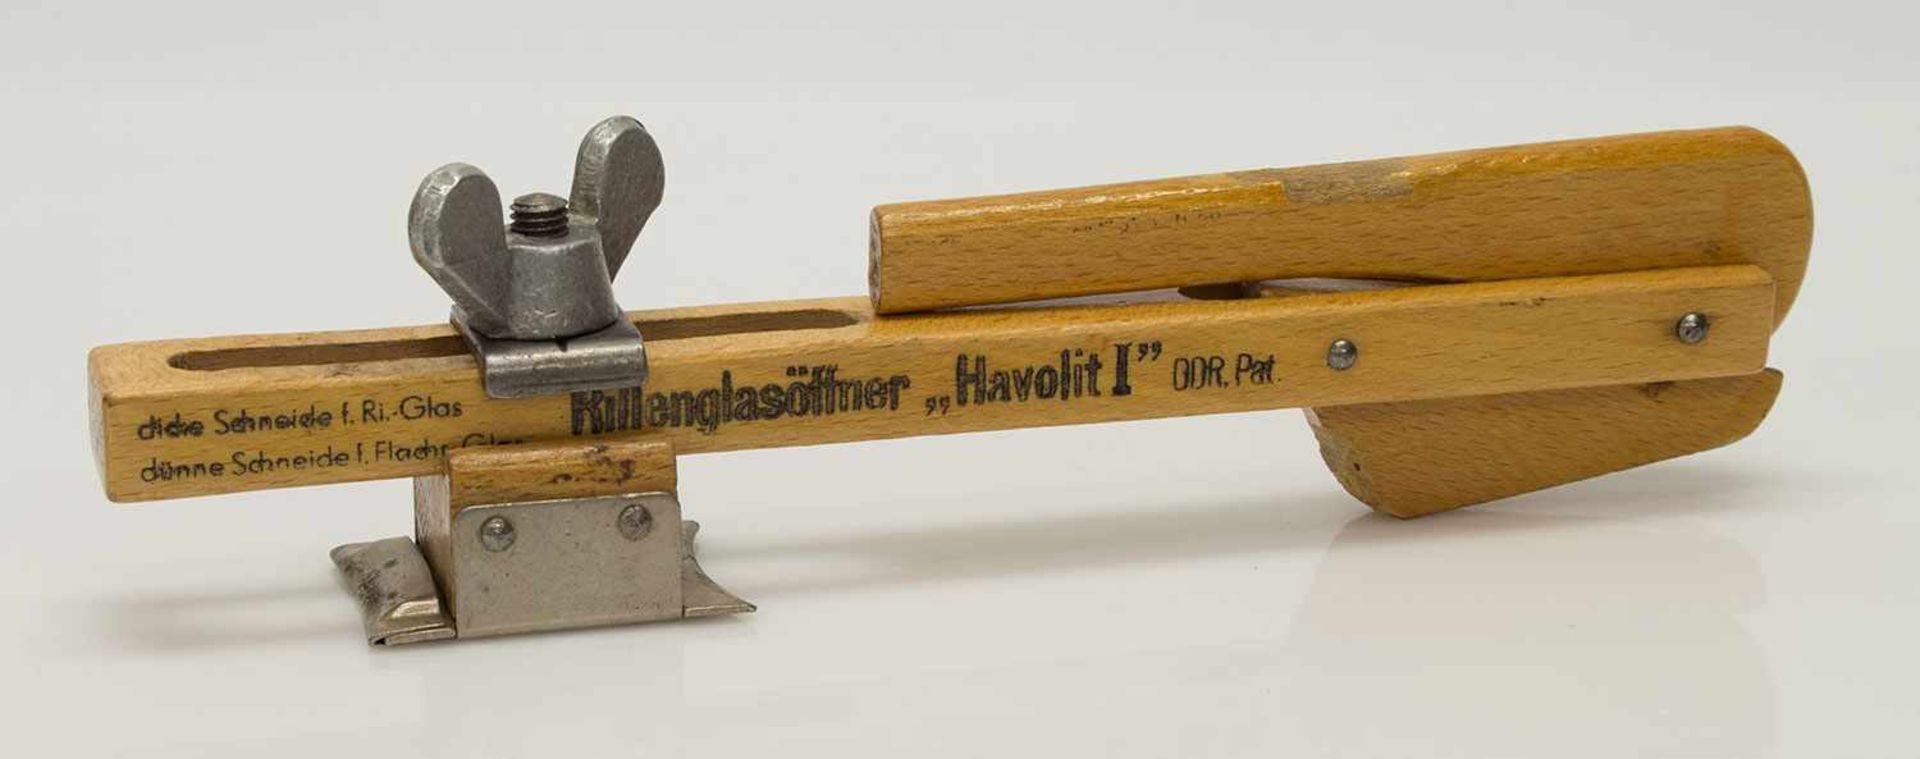 Rillenglasöffner„Havolit I“, DDR Patent, Holz